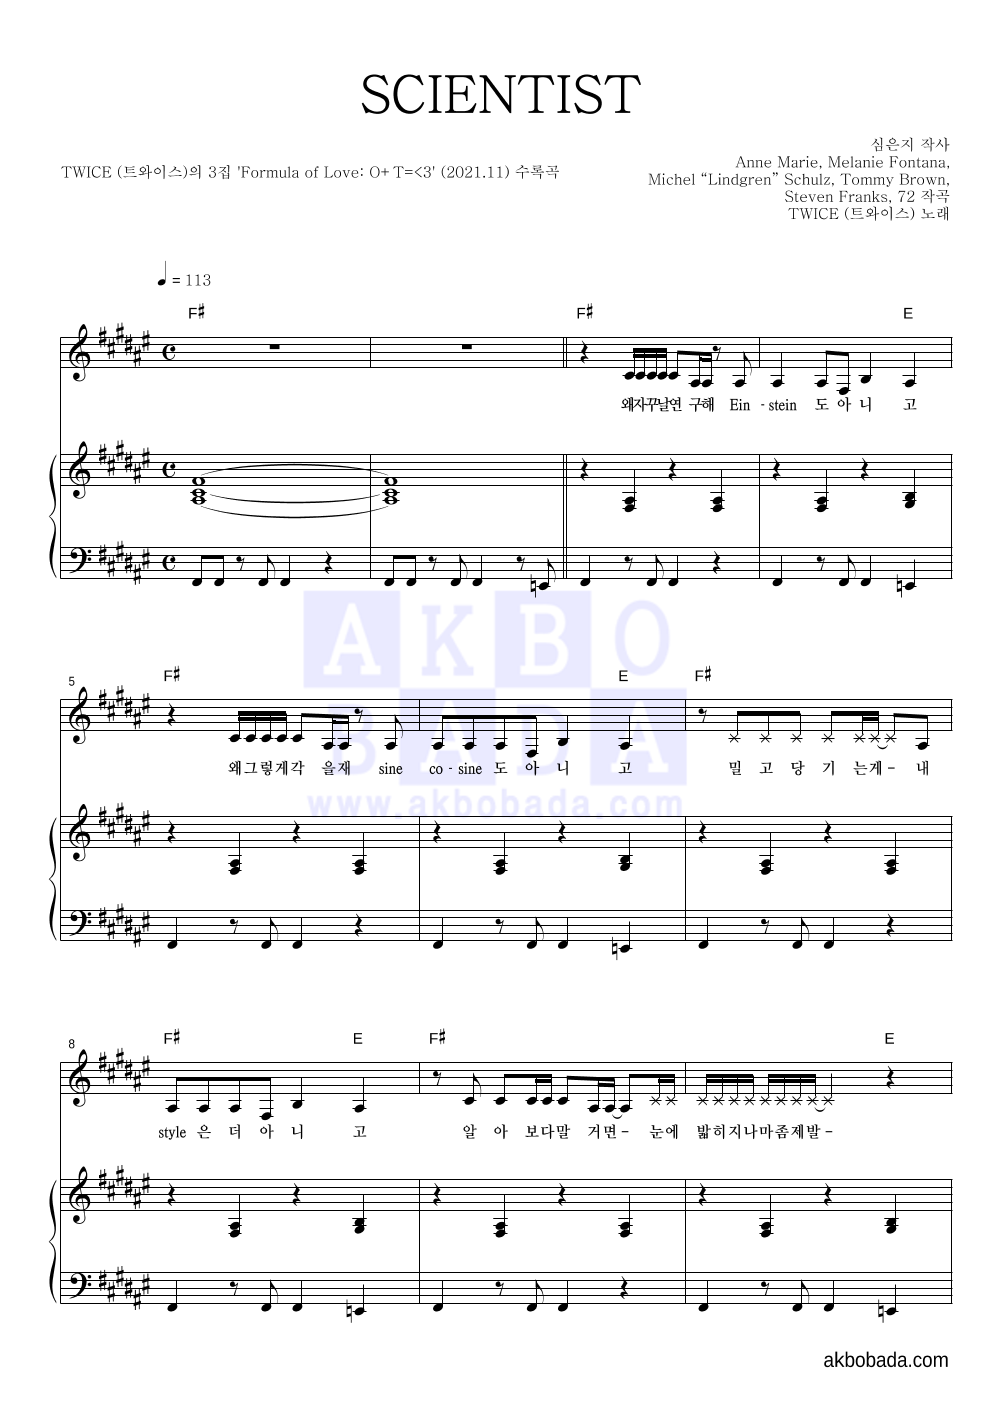 트와이스 - SCIENTIST 피아노 3단 악보 